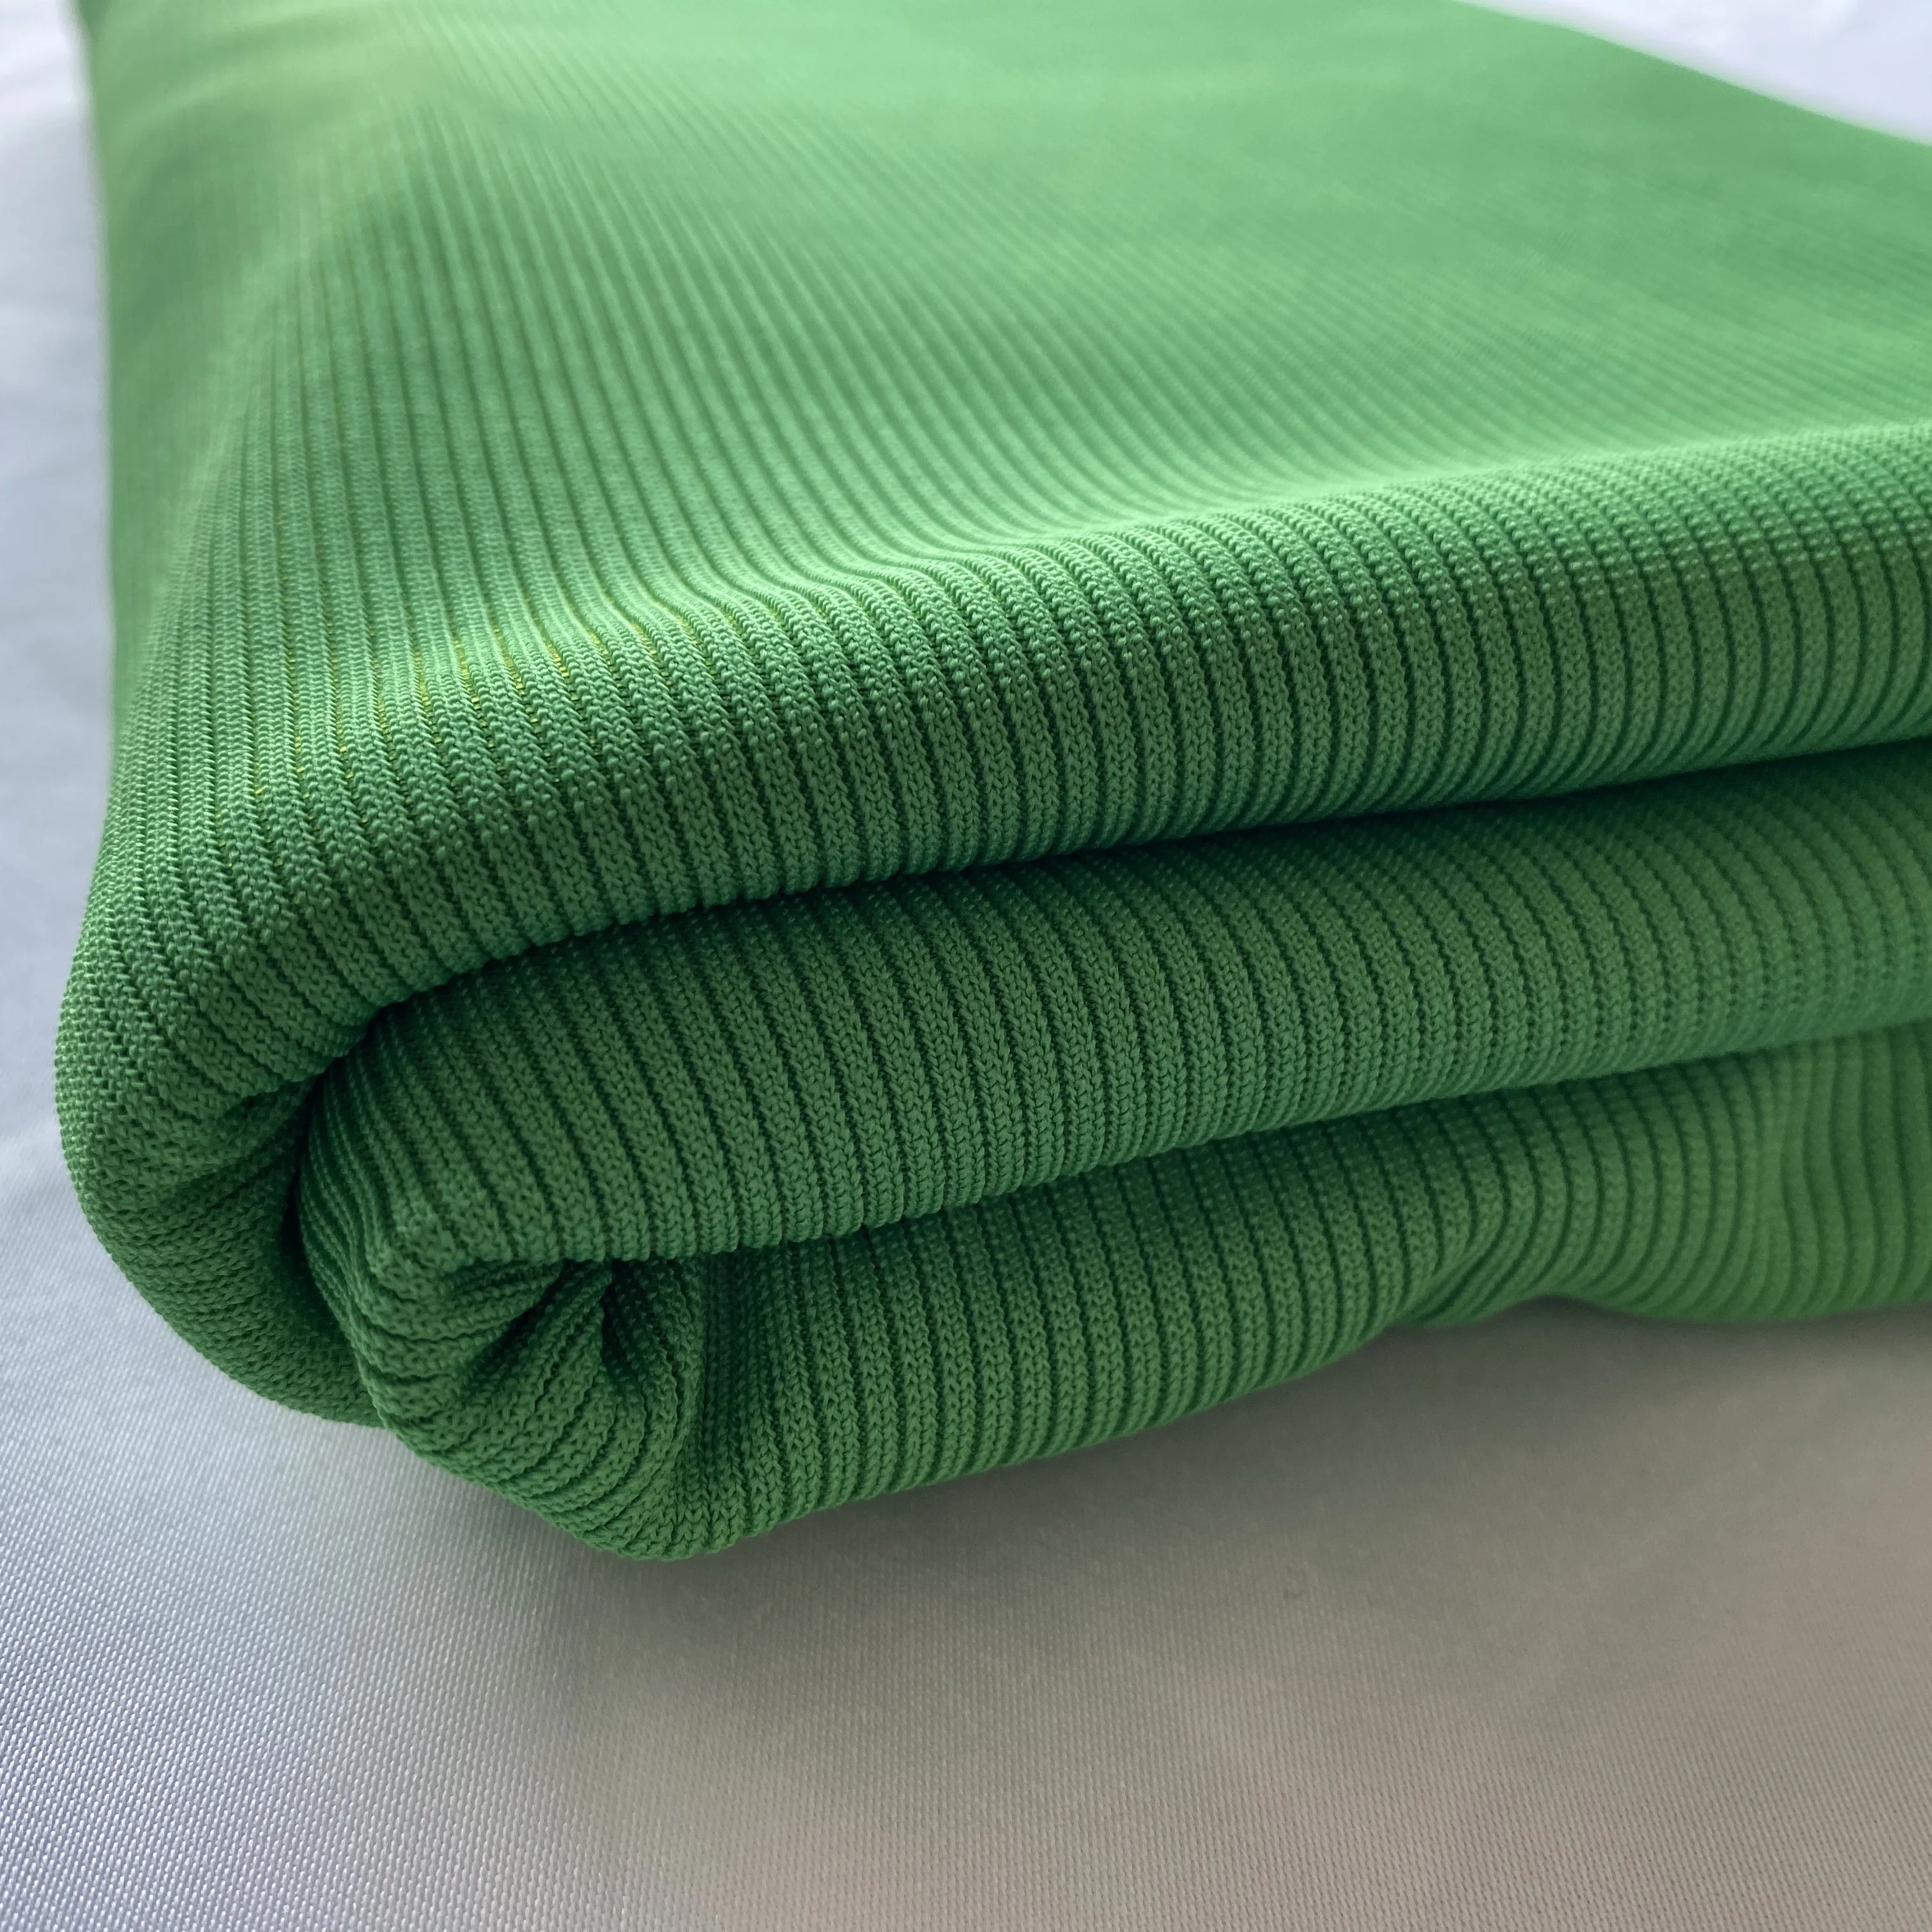 亮绿色透气平纹染色管状罗纹循环涤纶棉联锁针织面料